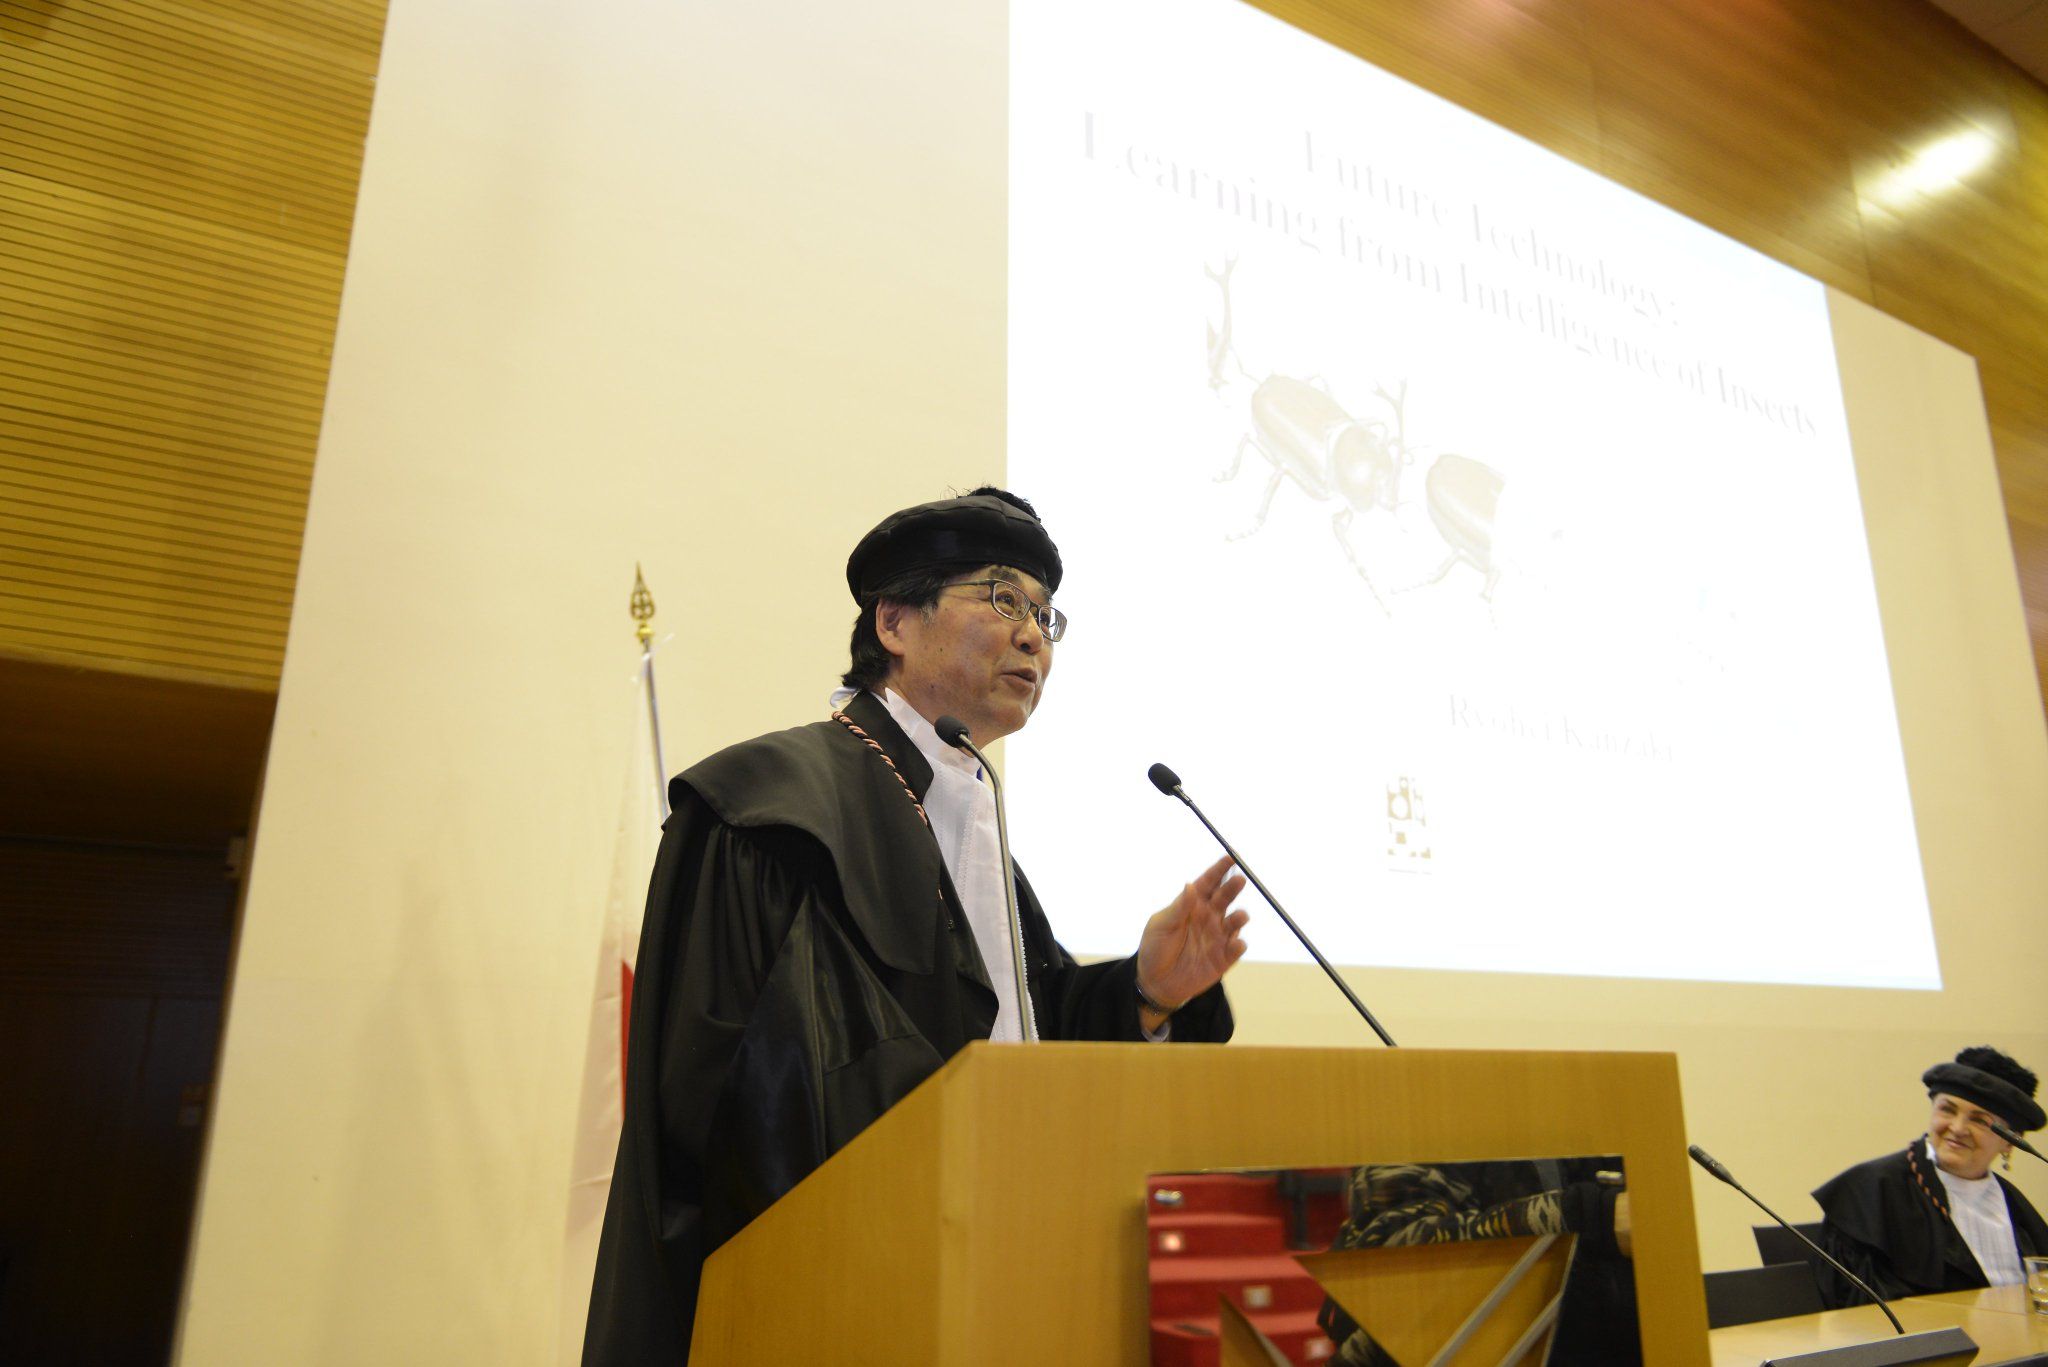 Università Milano-Bicocca: Laurea honoris causa a Ryohei Kanzaki